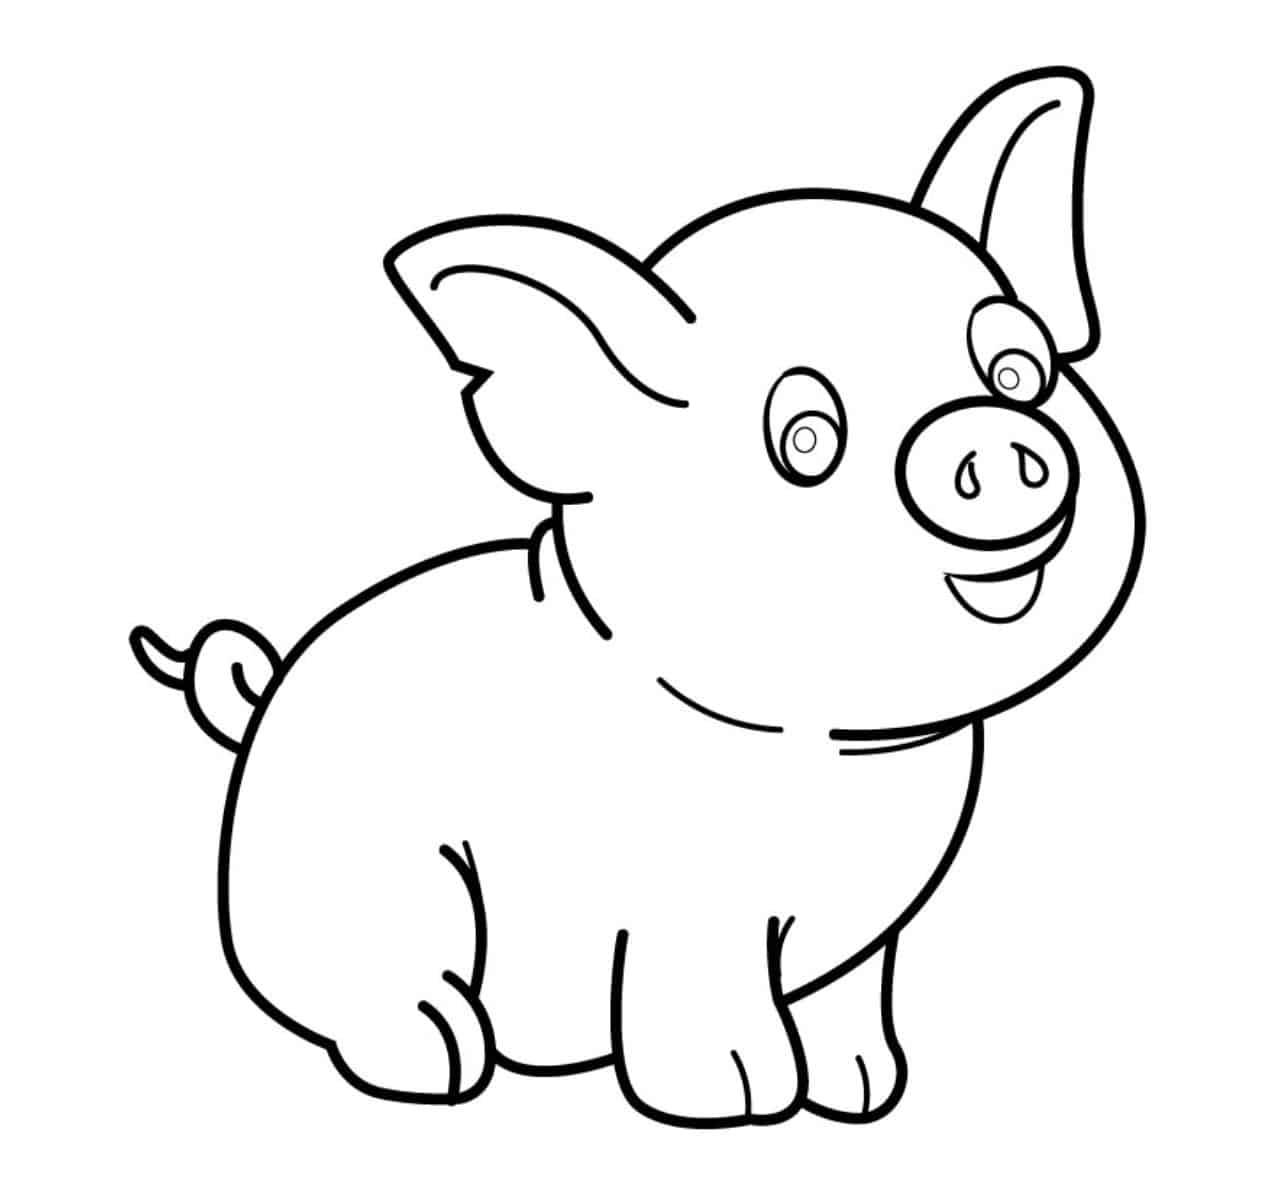 Vẽ khuôn mặt cho chú lợn